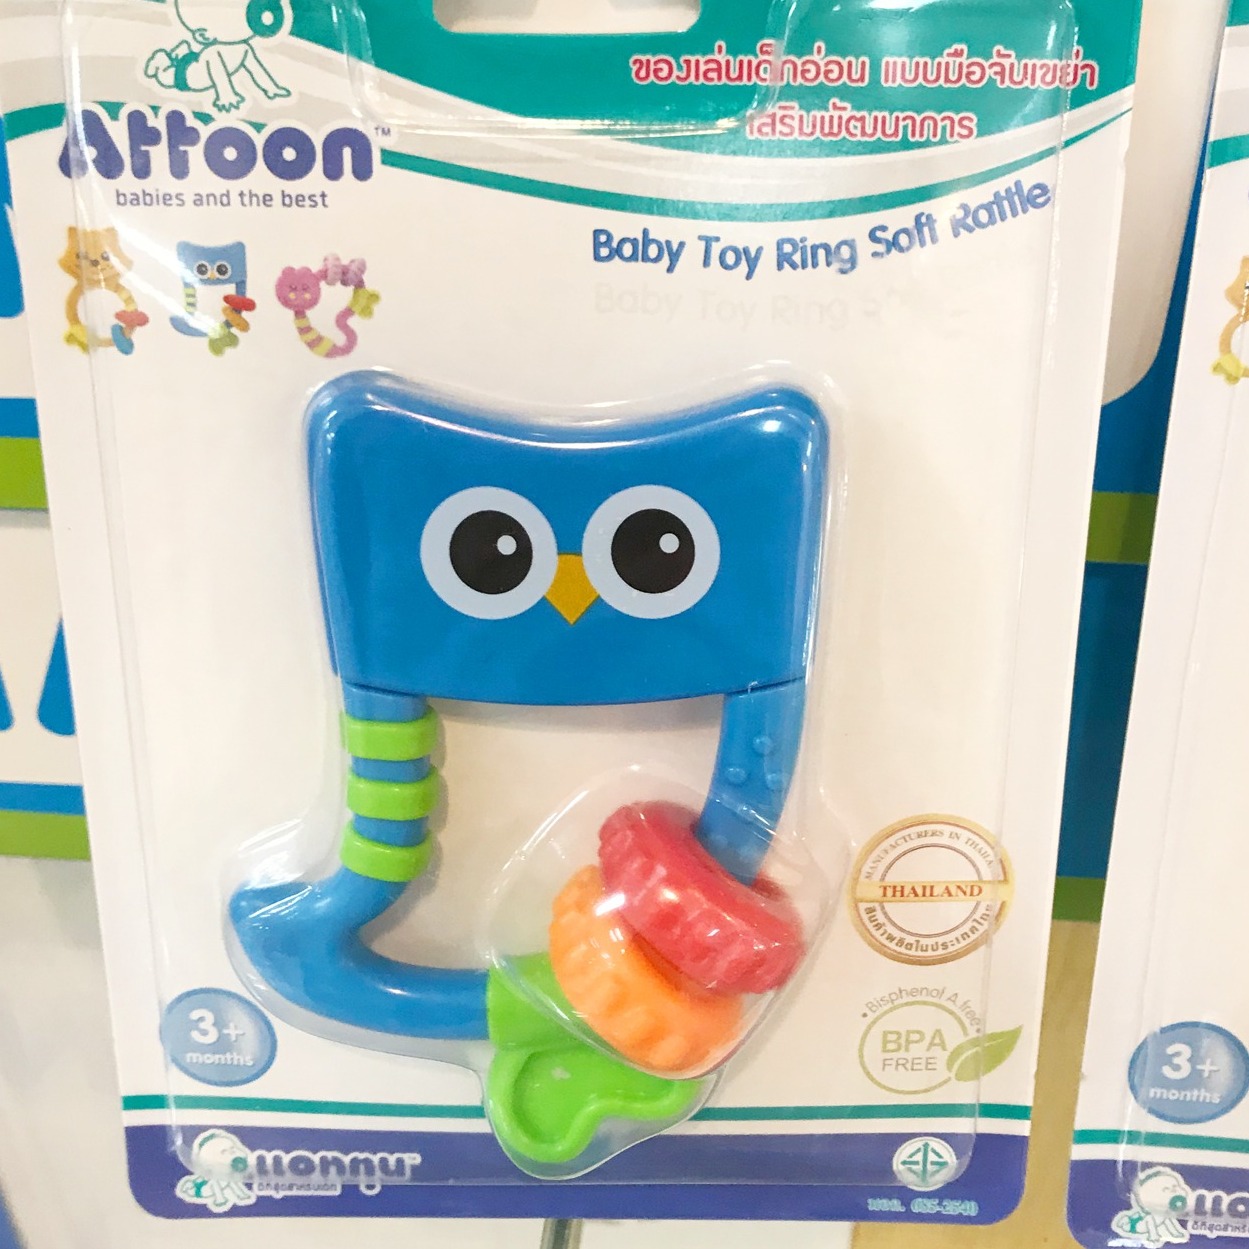 ATTOON ของเล่นเด็ก เขย่ามือกระดิ่ง กรุ๊งกริ๊ง เขย่ามือรูปการ์ตูน เสริมพัฒนาการเด็ก รวม 1 ชิ้น ( **เลือกแบบได้ ) ATTOON Baby Toy Ring Rattle